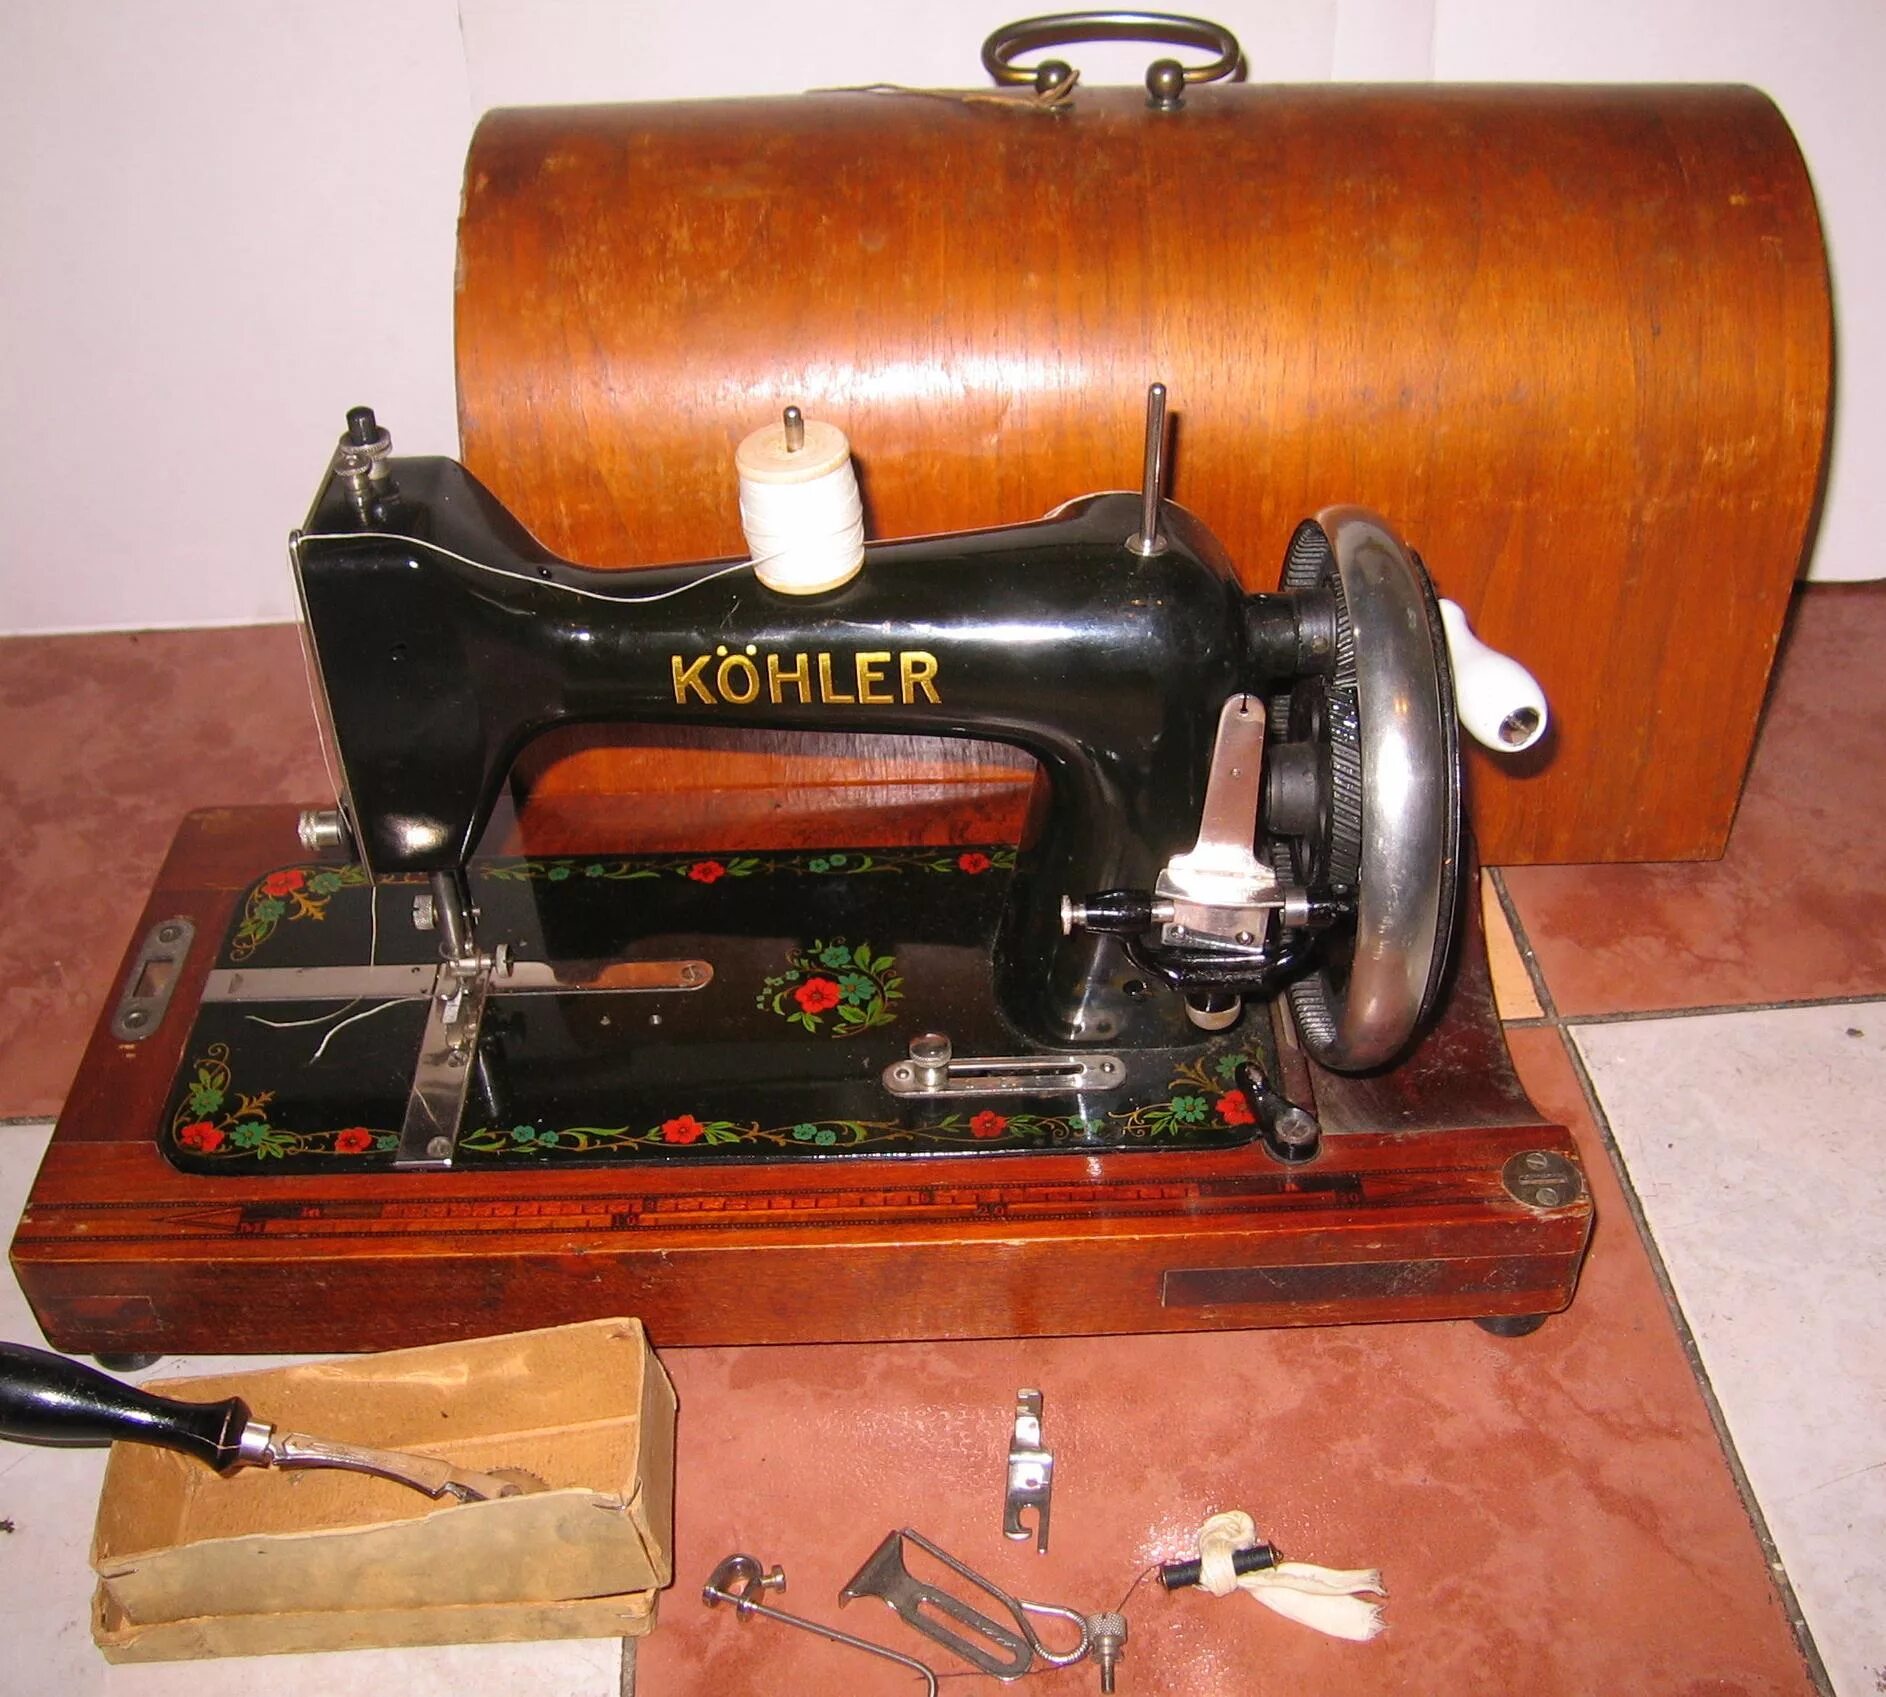 Швейная машинка 18. Kohler швейная машинка. Kohler 52 2 швейная машинка. Швейная машинка Кохлер 1903г. Швейная машинка kohler Natalis.